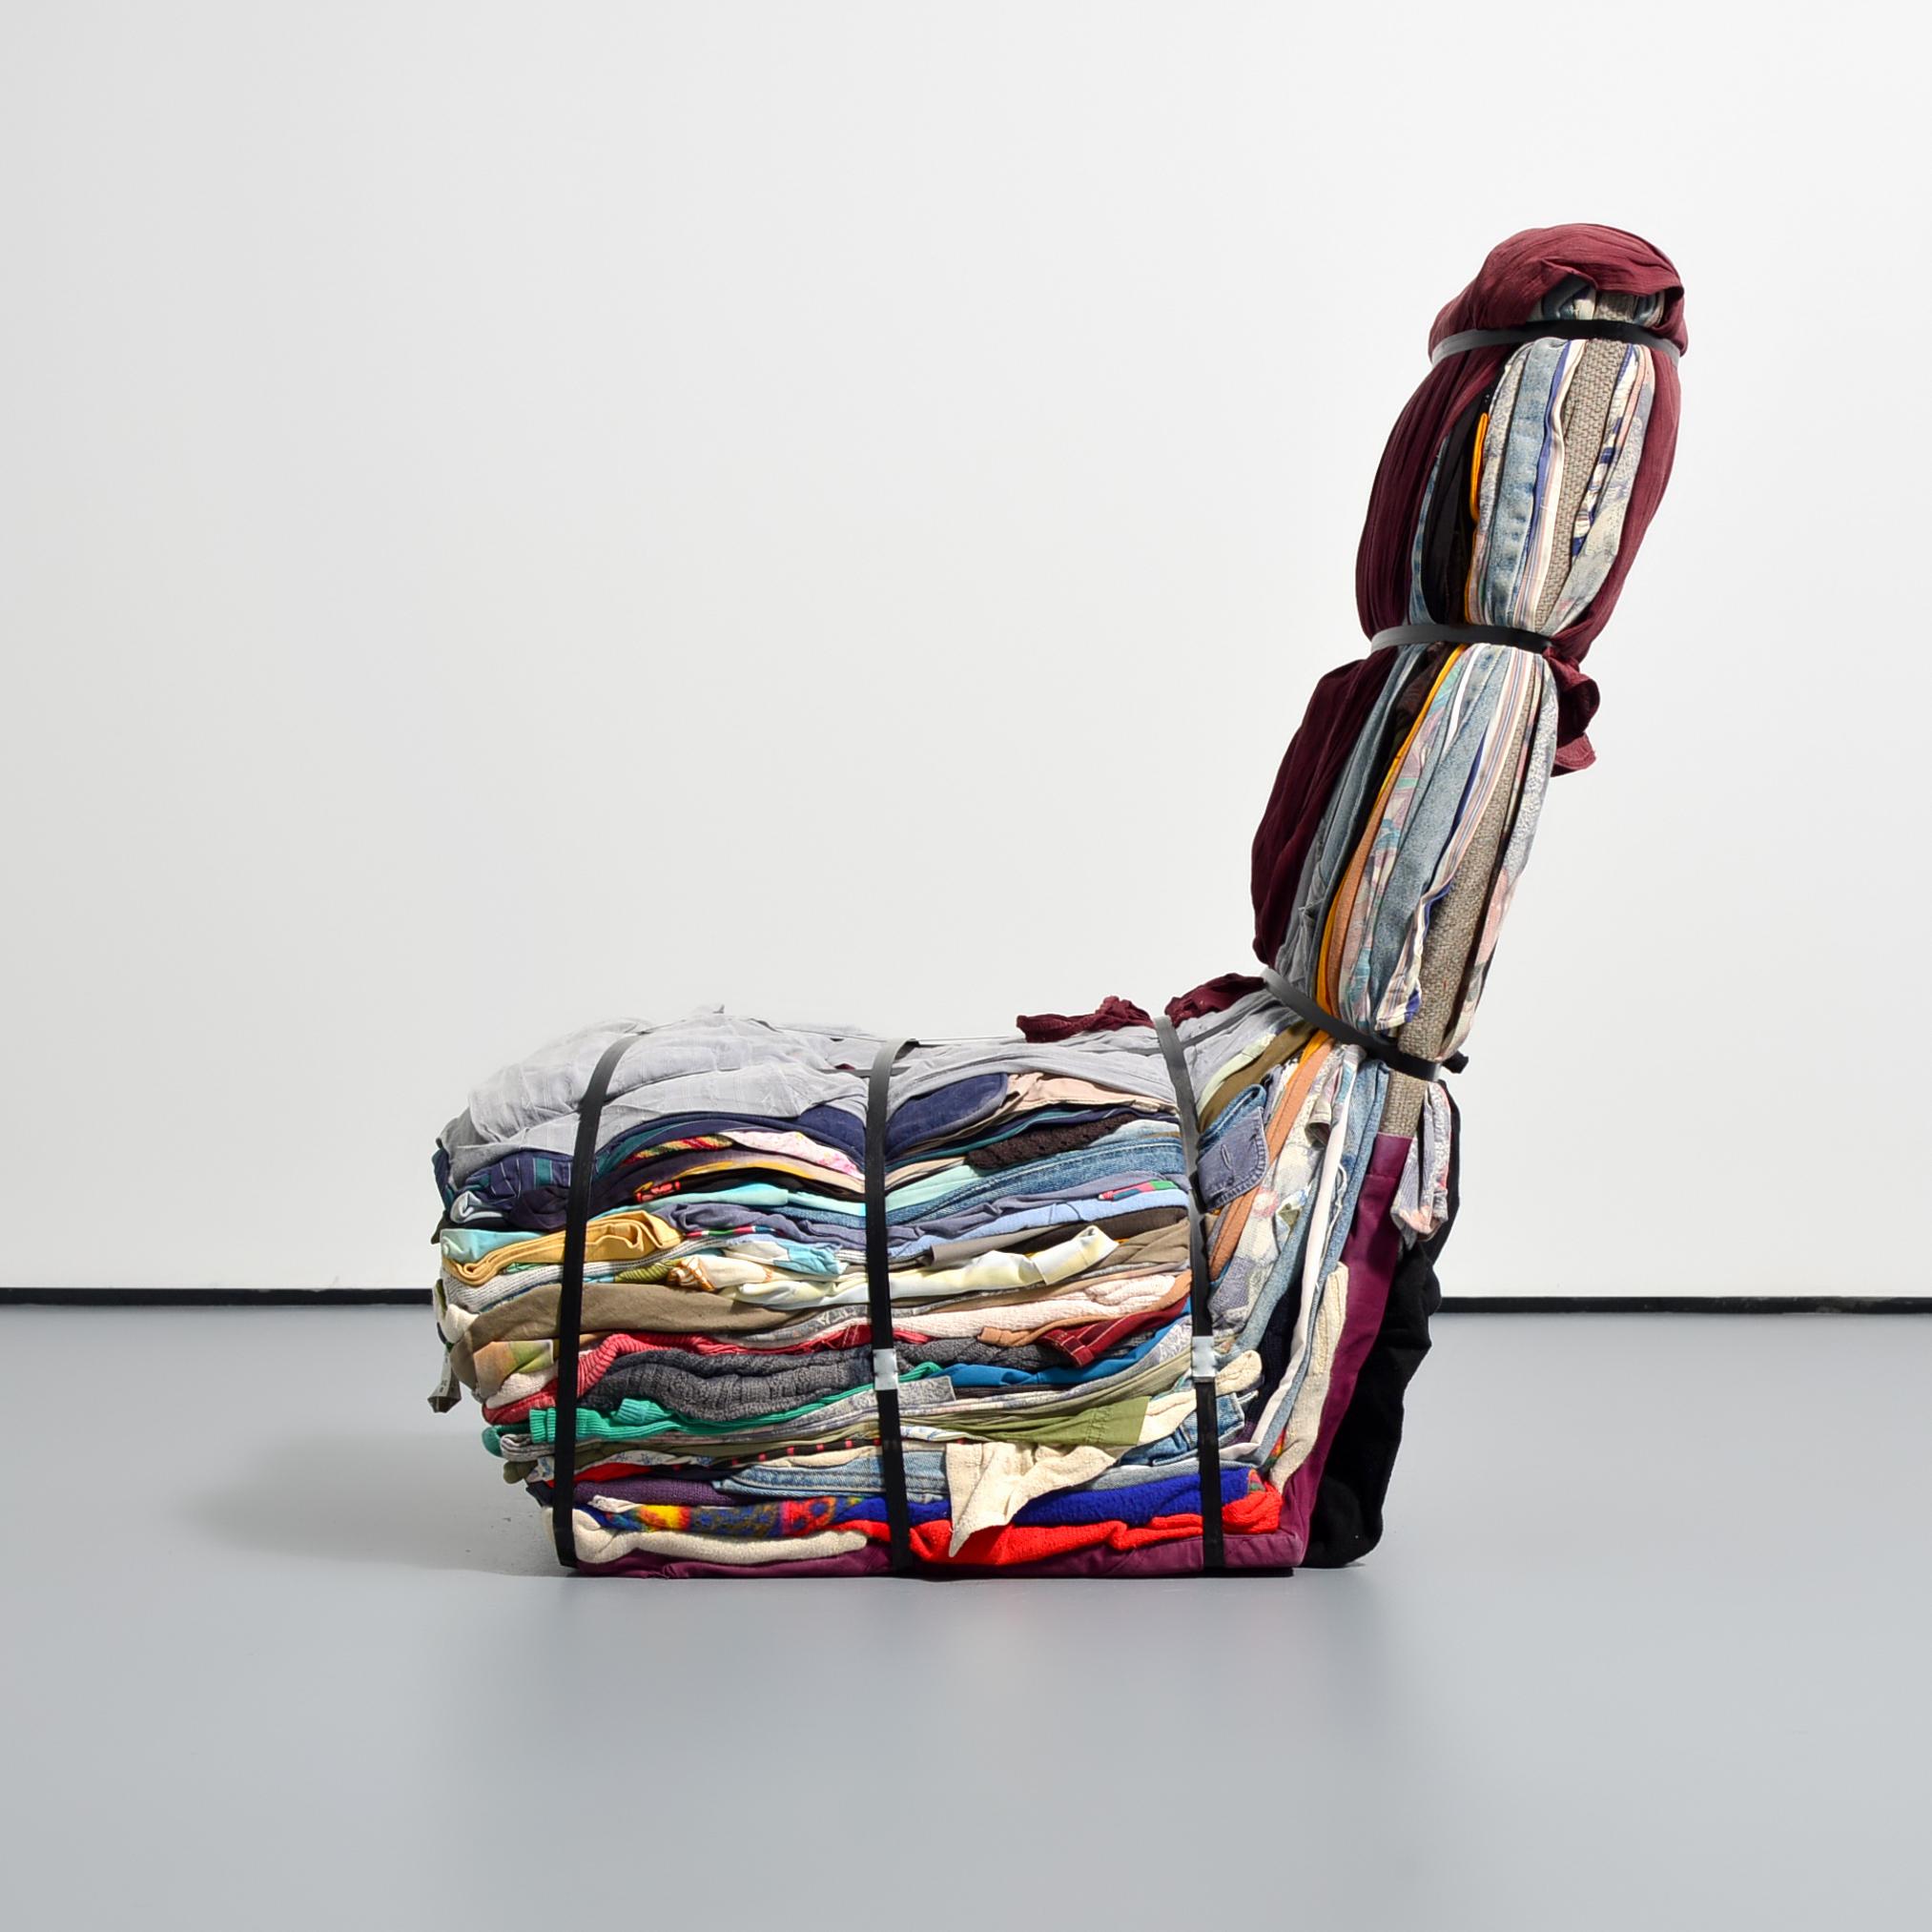 Artistics/Designer : Tejo Remy (Néerlandais, né en 1960)

Informations complémentaires : Chaque chaise en chiffon est unique.

Marquage(s) ; notes : pas de marquage(s) apparent(s)

Pays d'origine ; matériaux : Pays-Bas ; textiles, bois,